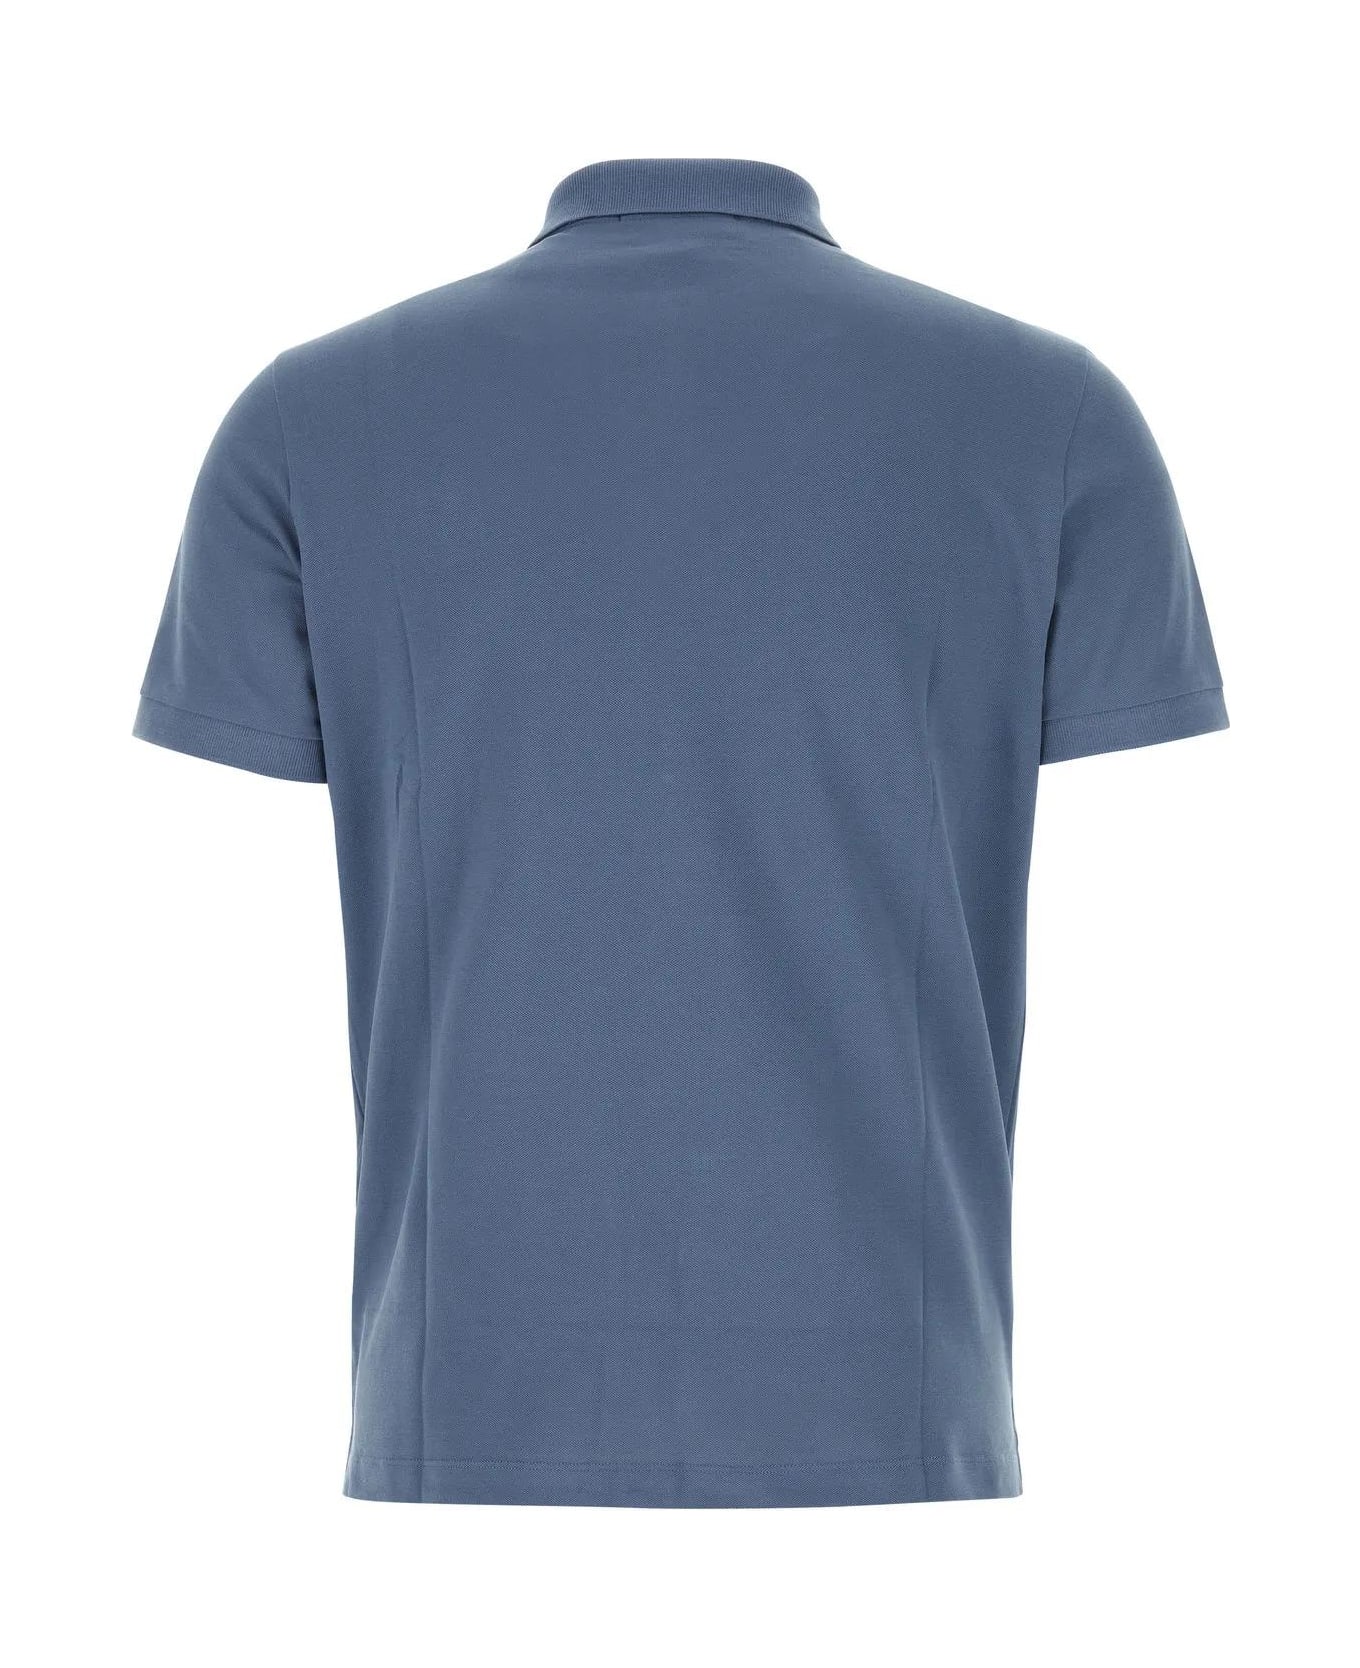 Stone Island Air Force Blue Stretch Piquet Polo Shirt - Blue